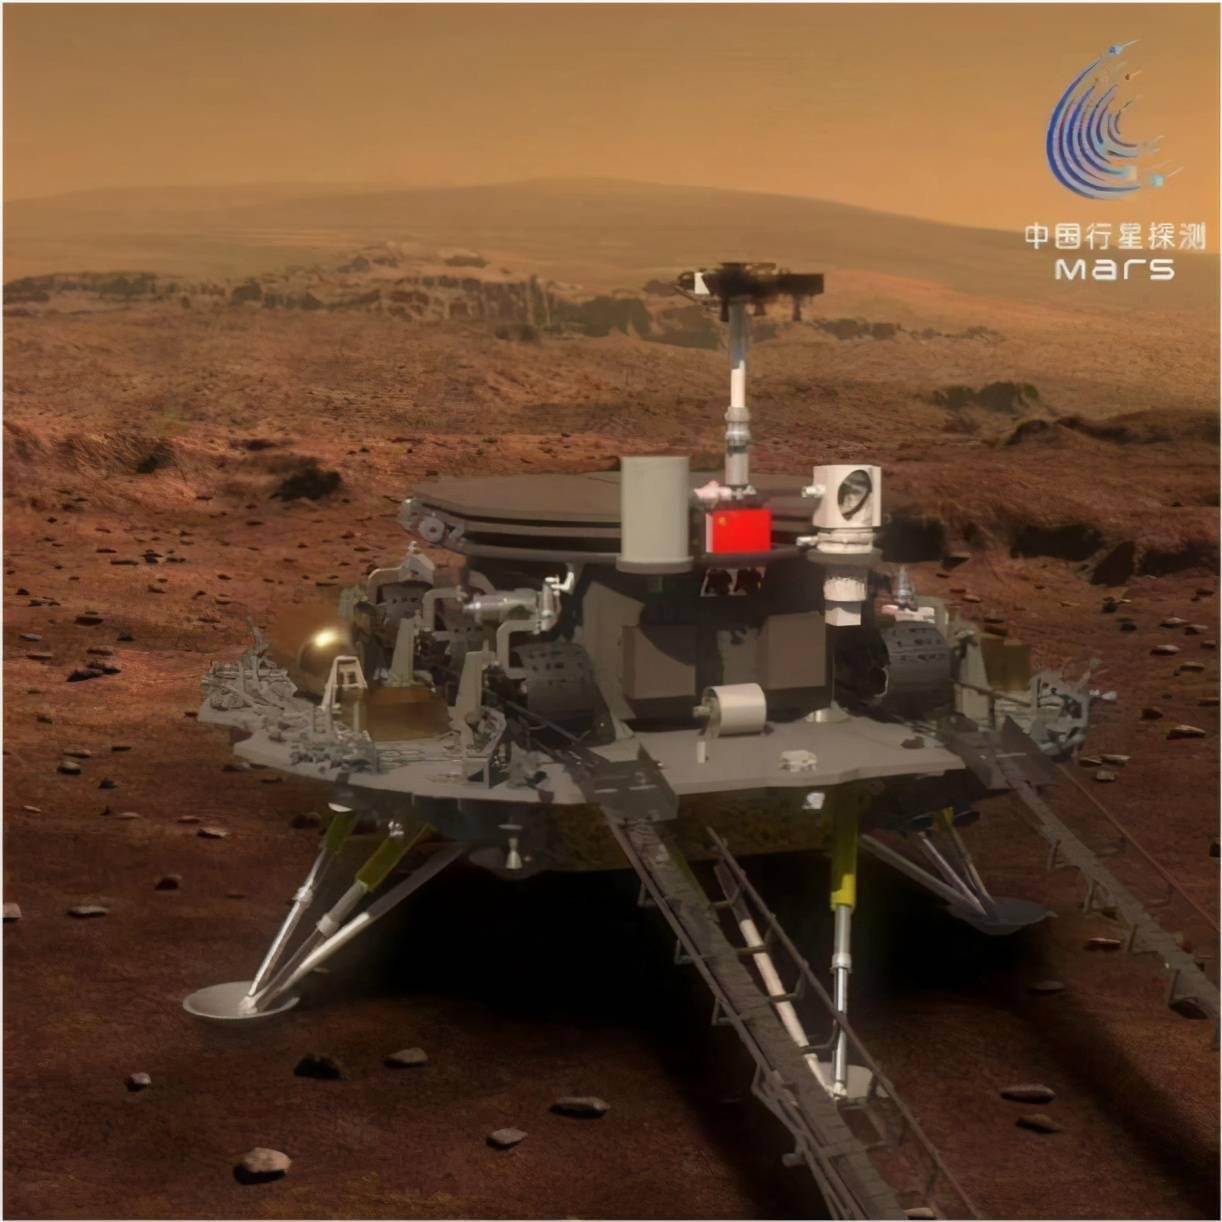 天问一号祝融火星车发布第一条微博地球的朋友们大家好着陆